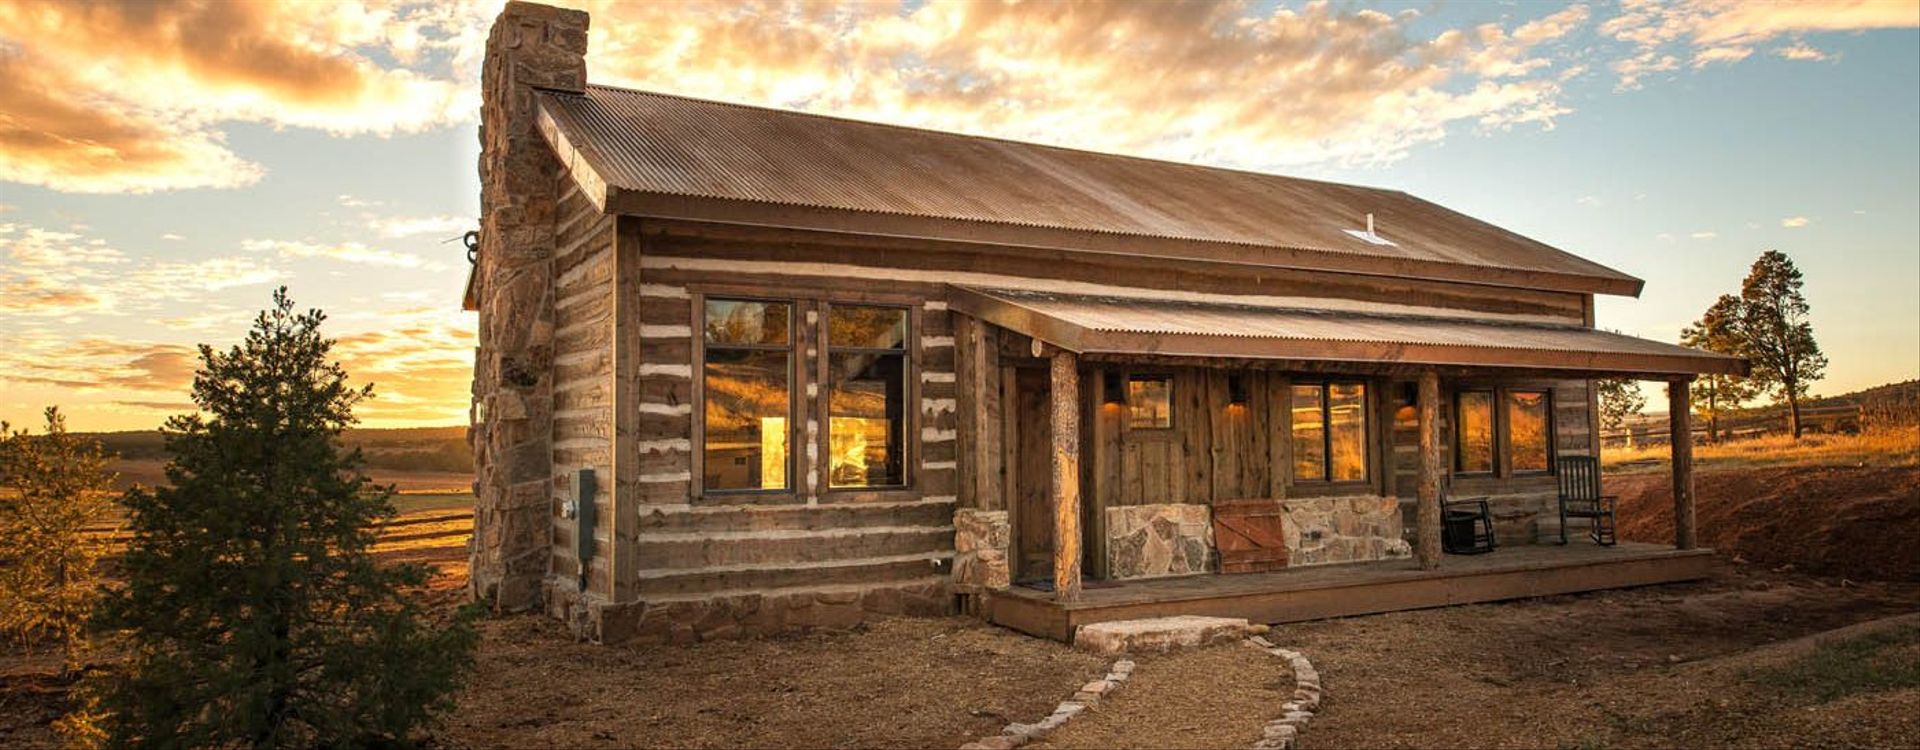 zion-mountain-ranch-sauna-lodge-1.jpeg